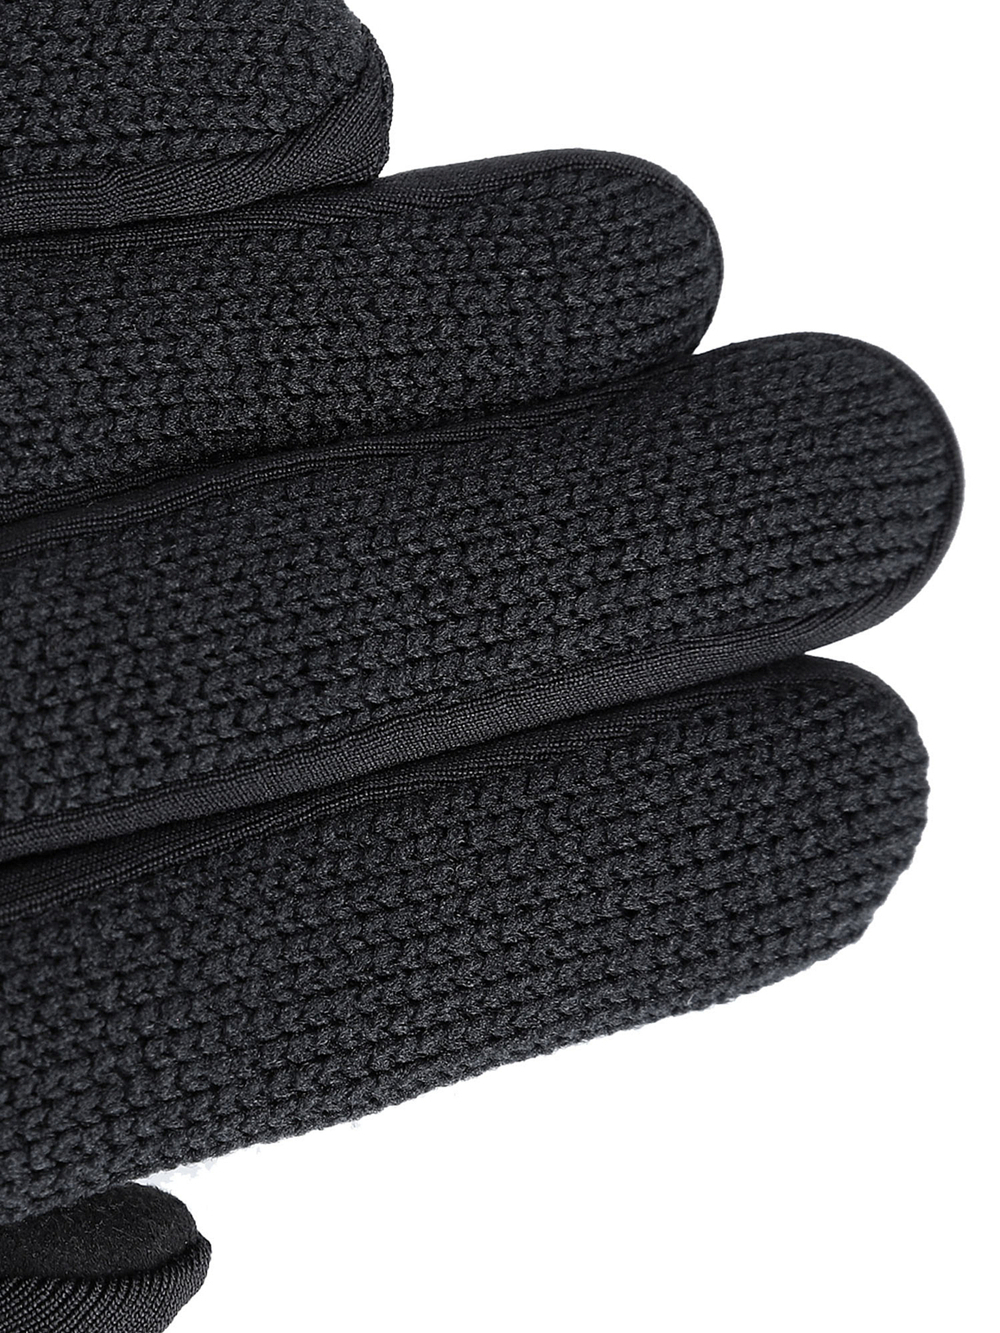 Перчатки VIKING Dramen Black (inch (дюйм):7)